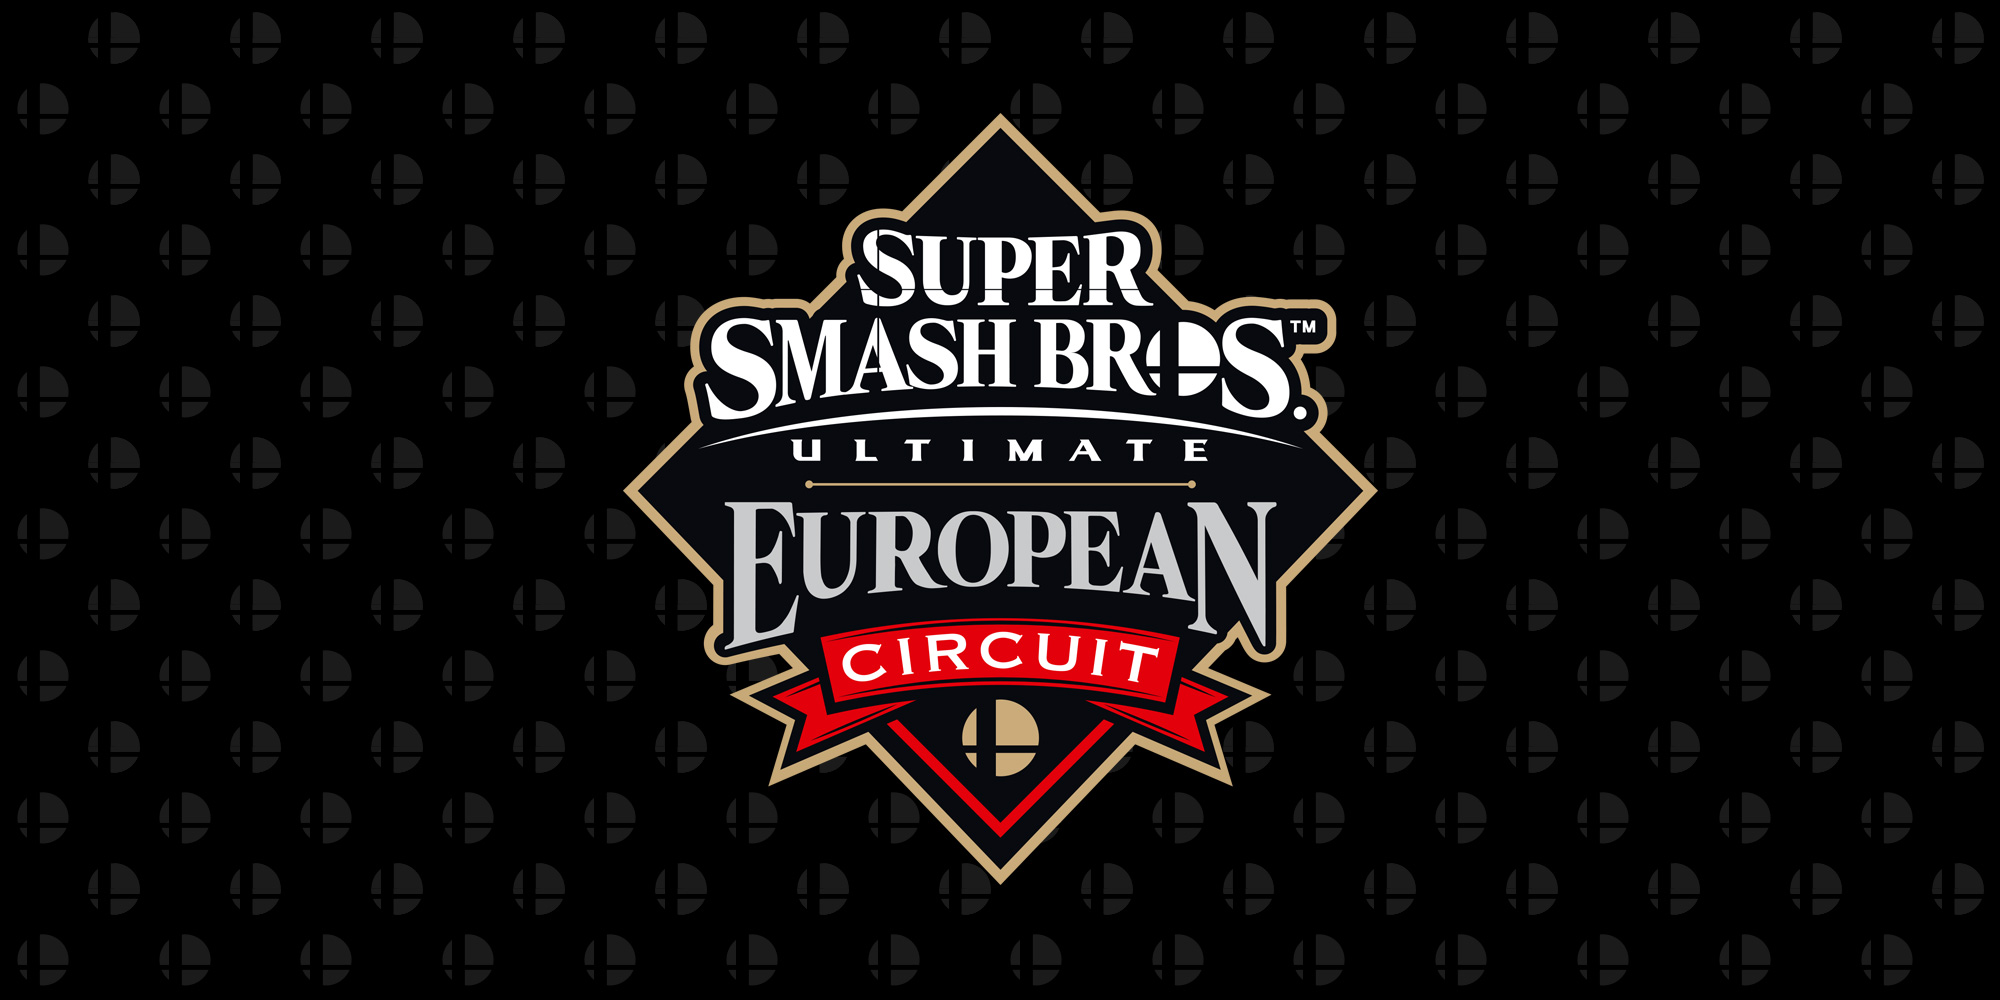 Glutonny pakt de eerste plaats op Valhalla III, het derde evenement van het Super Smash Bros. Ultimate European Circuit!